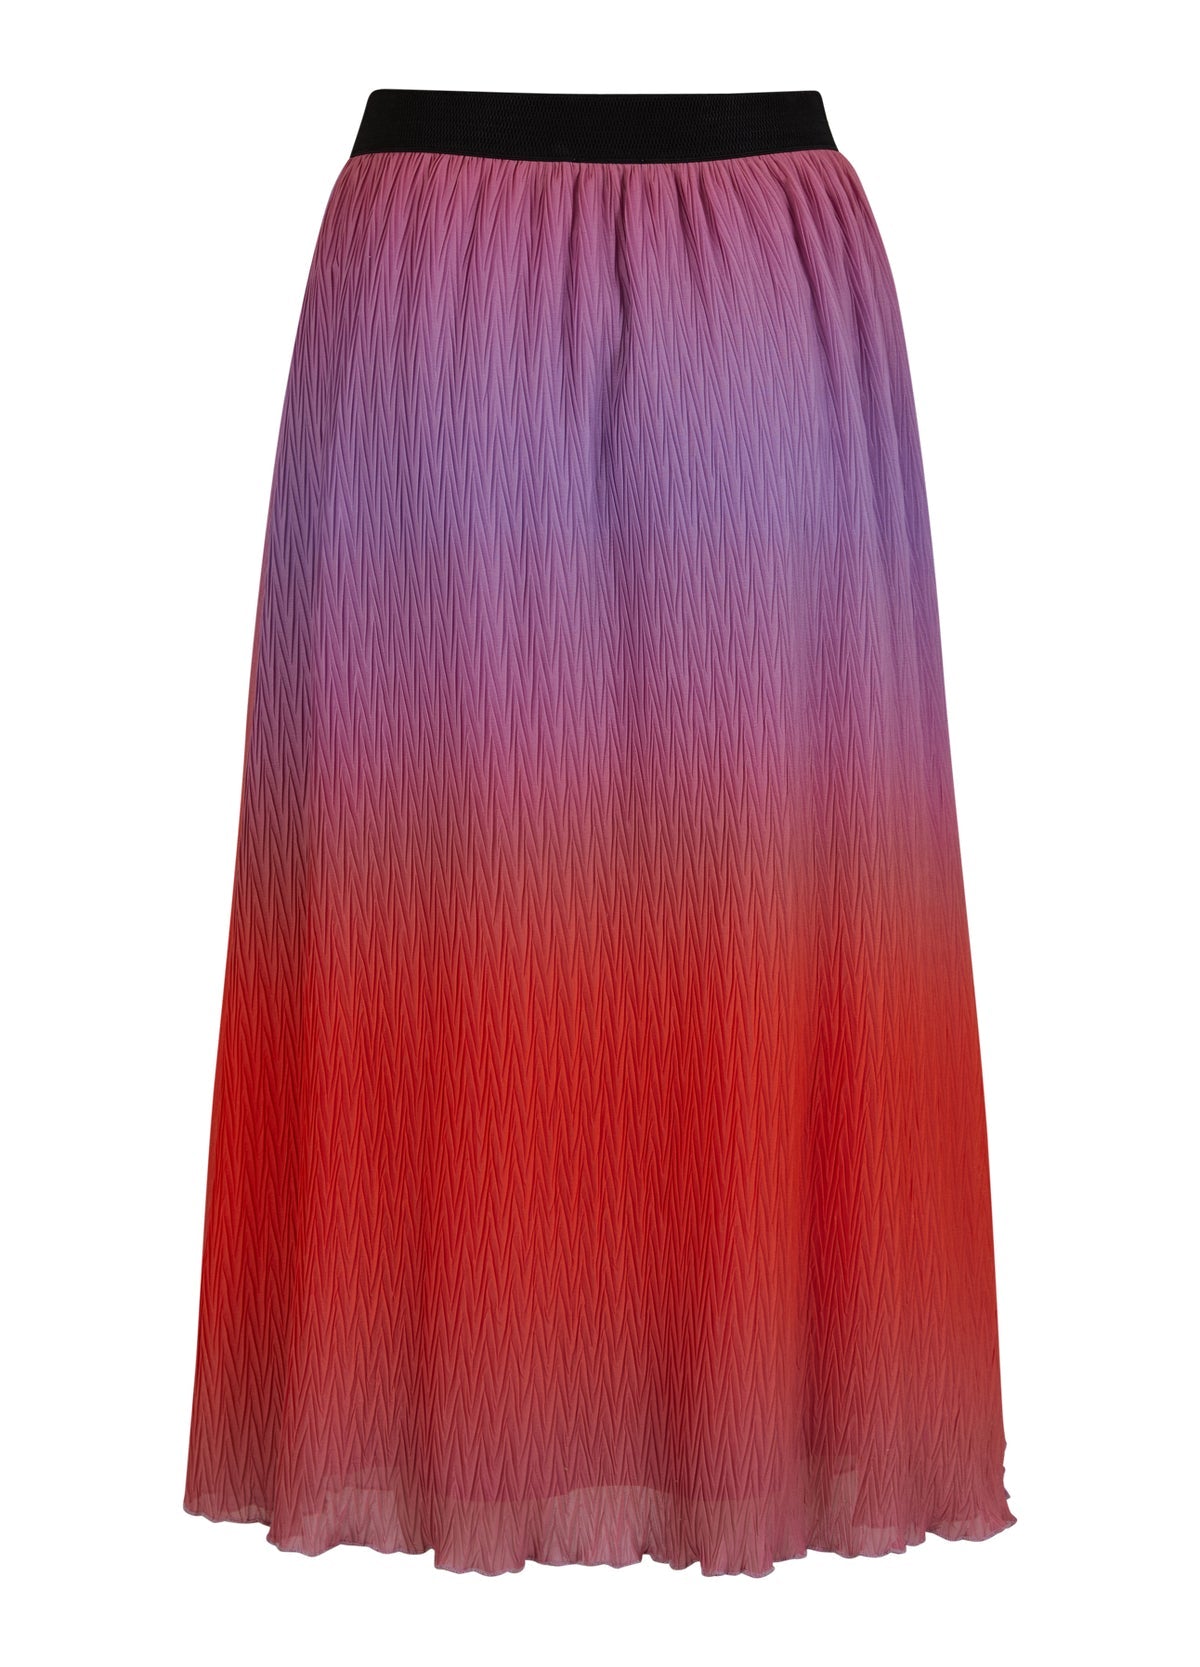 Plisse Skirt in Dip Dye